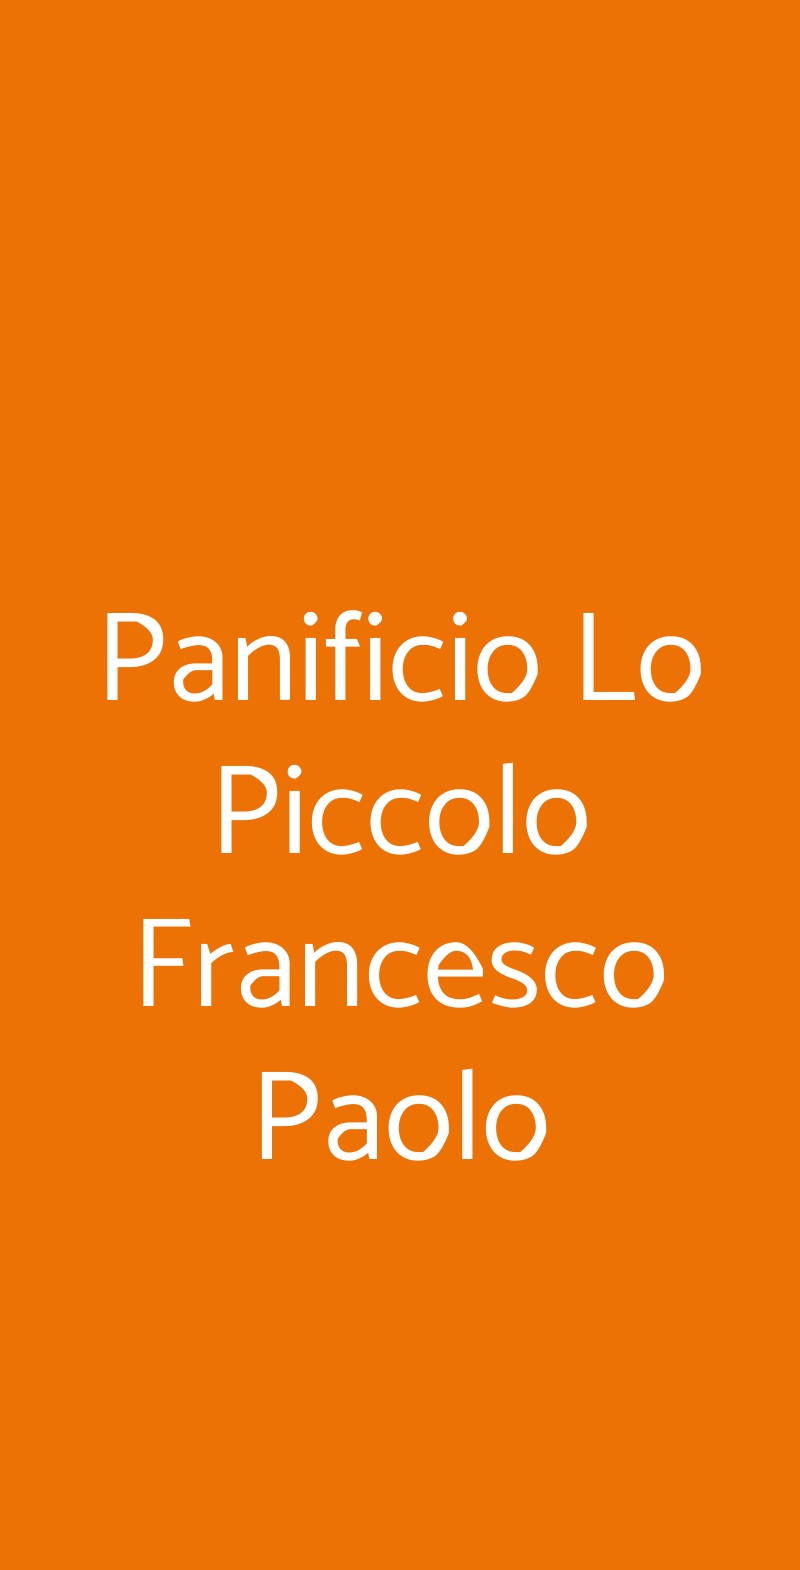 Panificio Lo Piccolo Francesco Paolo Palermo menù 1 pagina